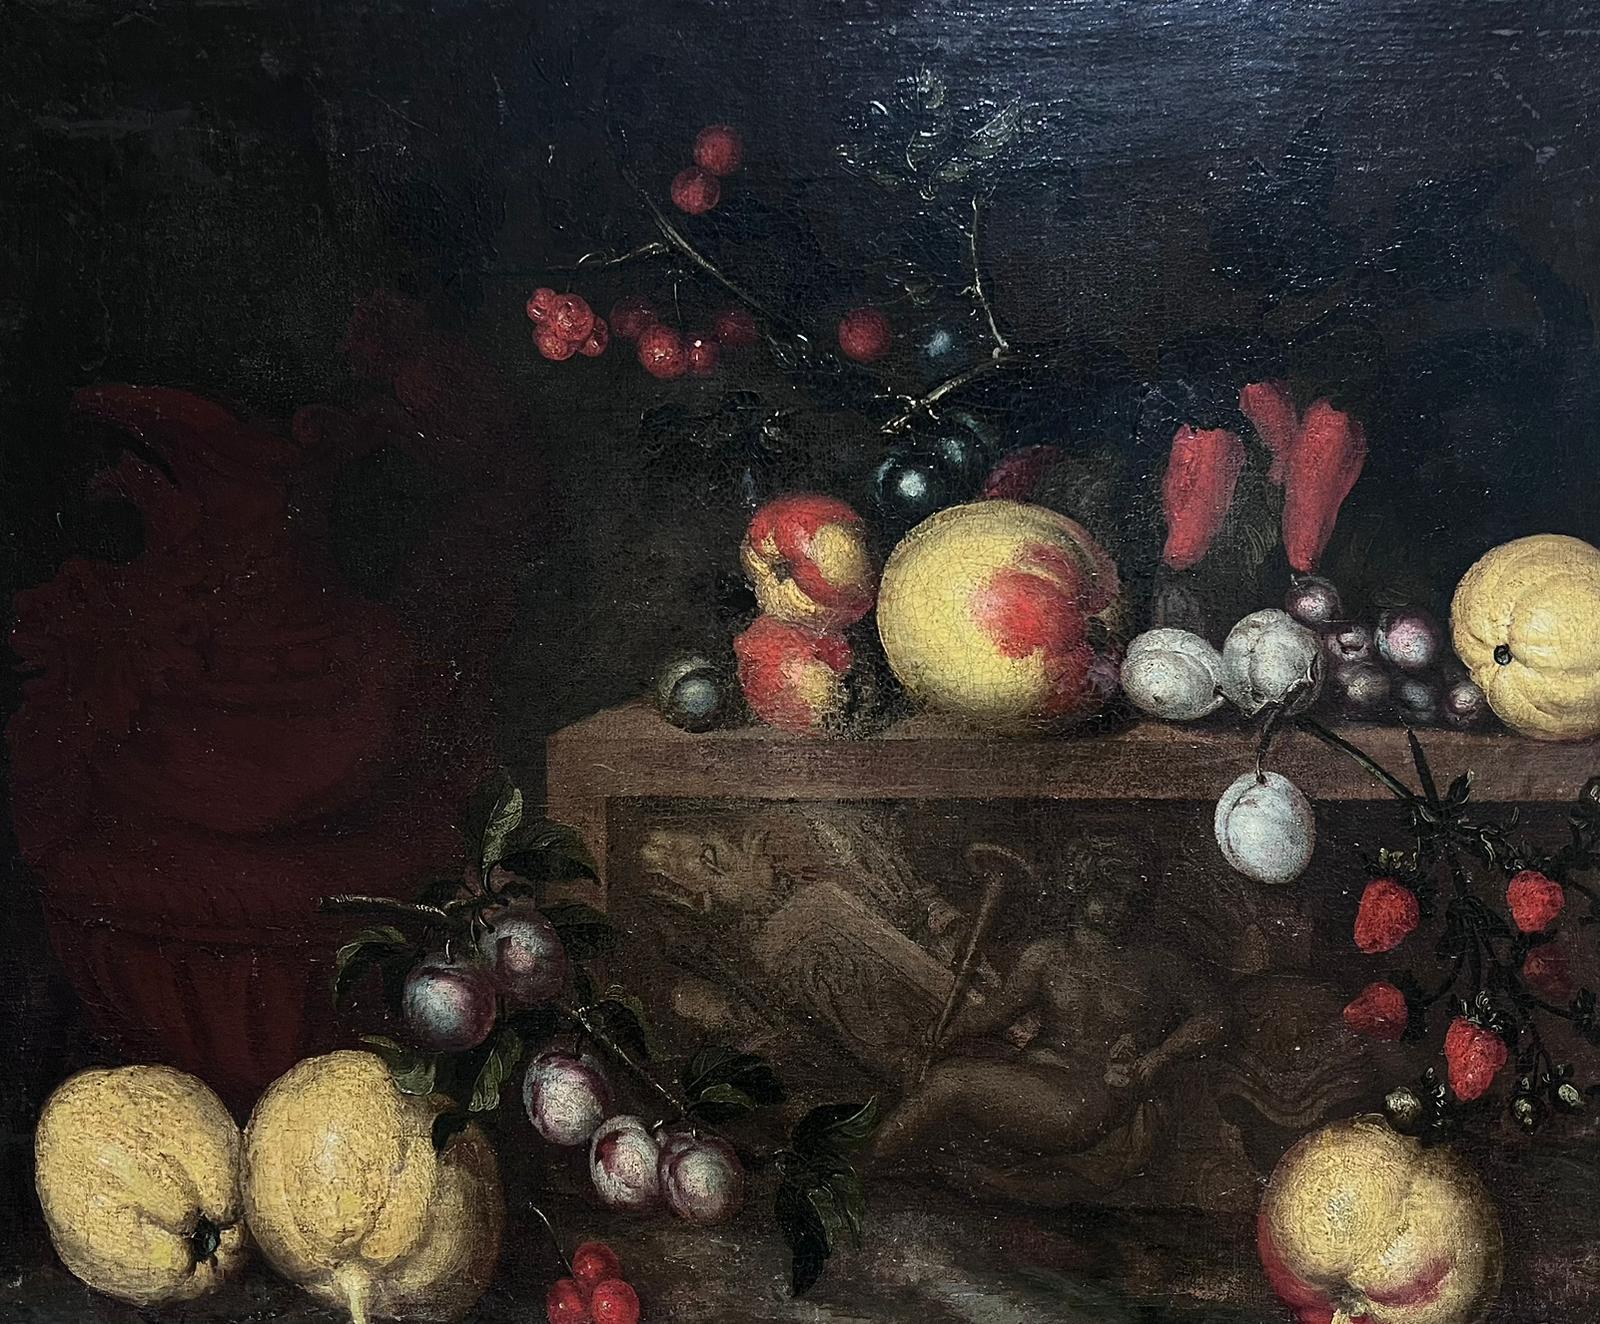 Italian 17th Century Old Master Interior Painting – Feines Stillleben des 17. Jahrhunderts, Ölgemälde eines alten Meisters, Obst auf Ledge, Italien